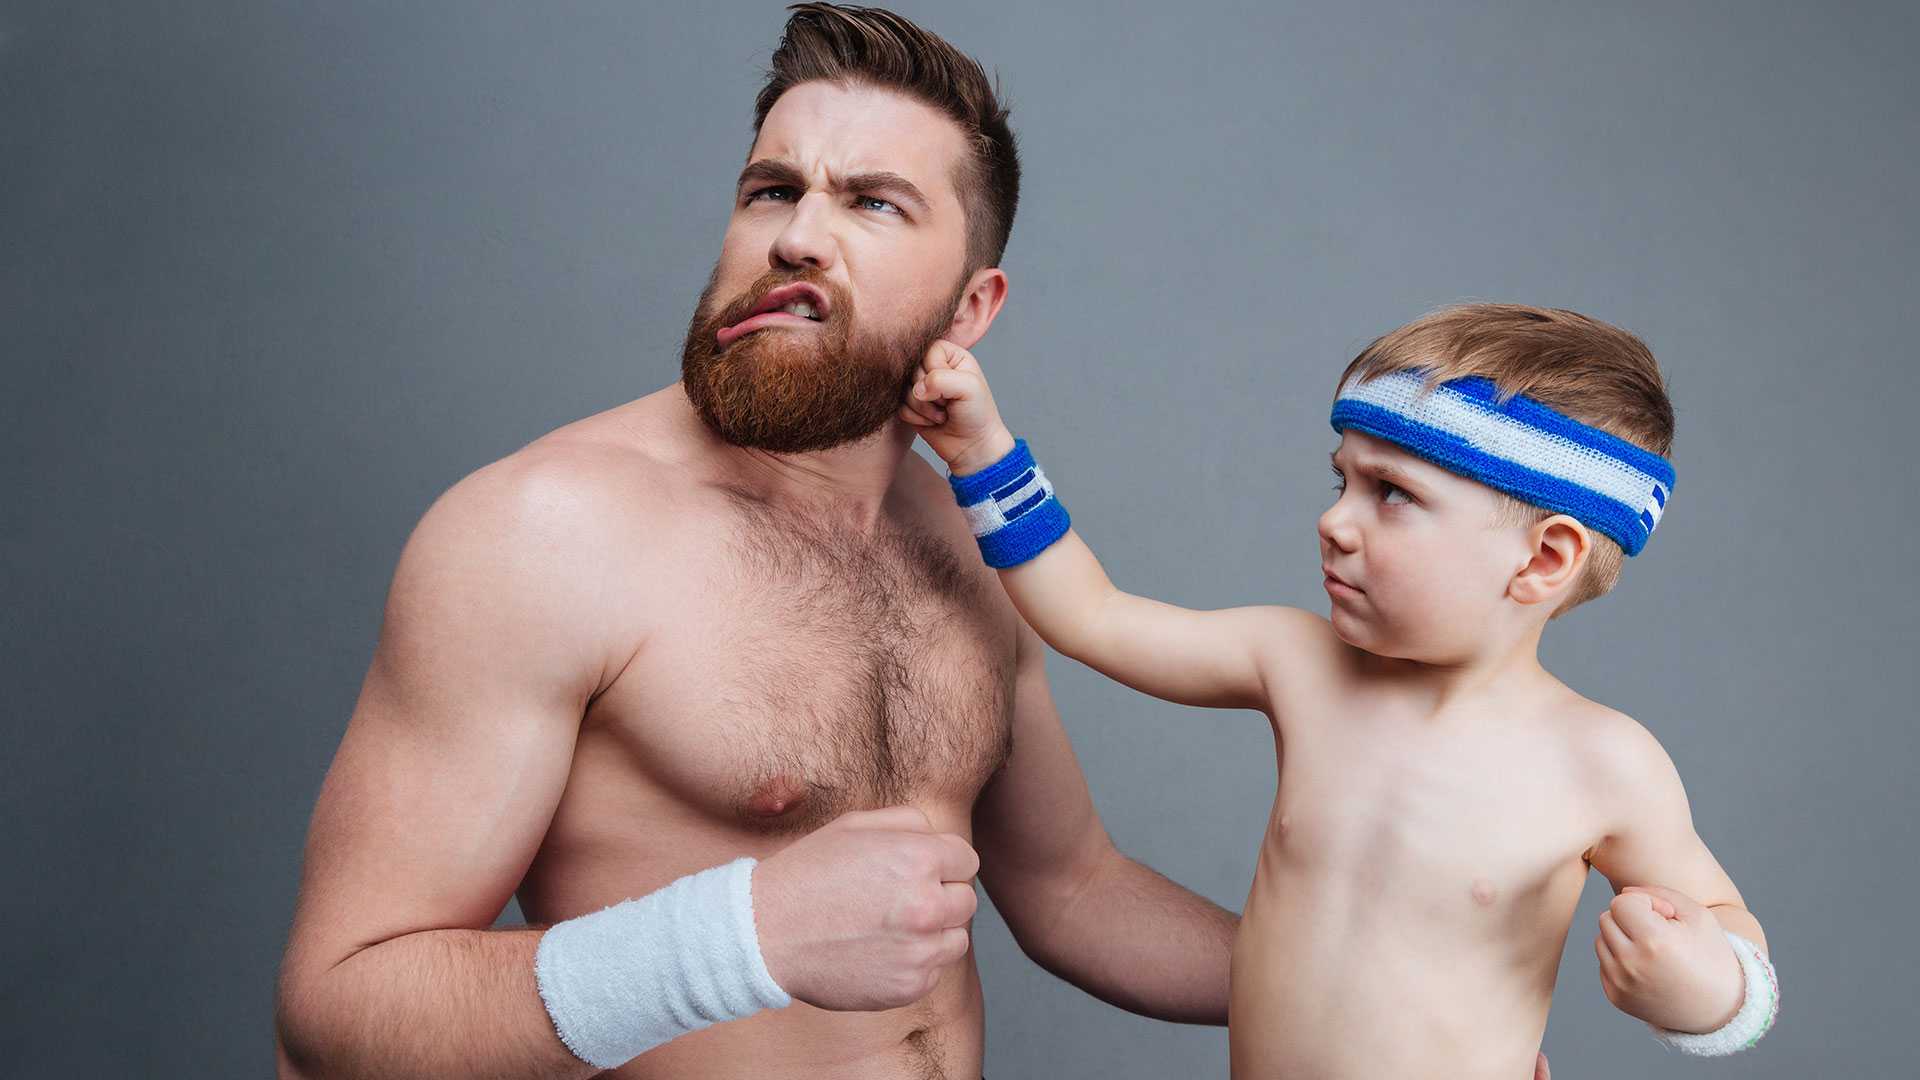 Dad teach wrestling